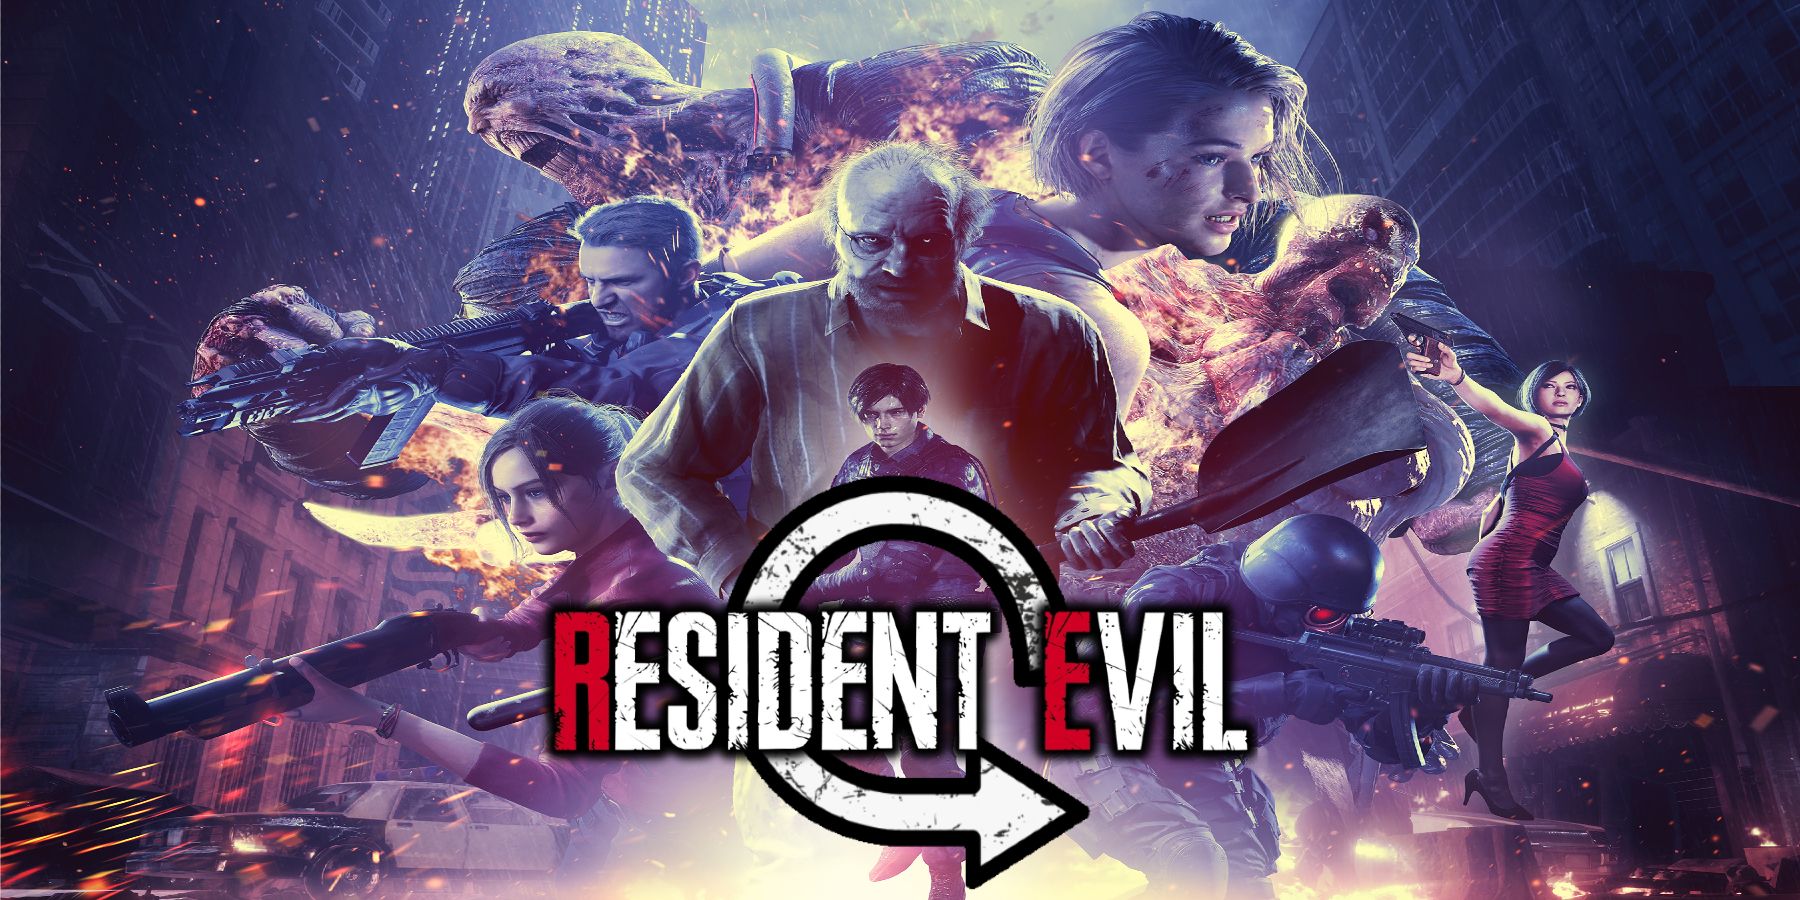 Обложка к 25-летию Resident Evil с наложенным логотипом и повторяющимся символом.